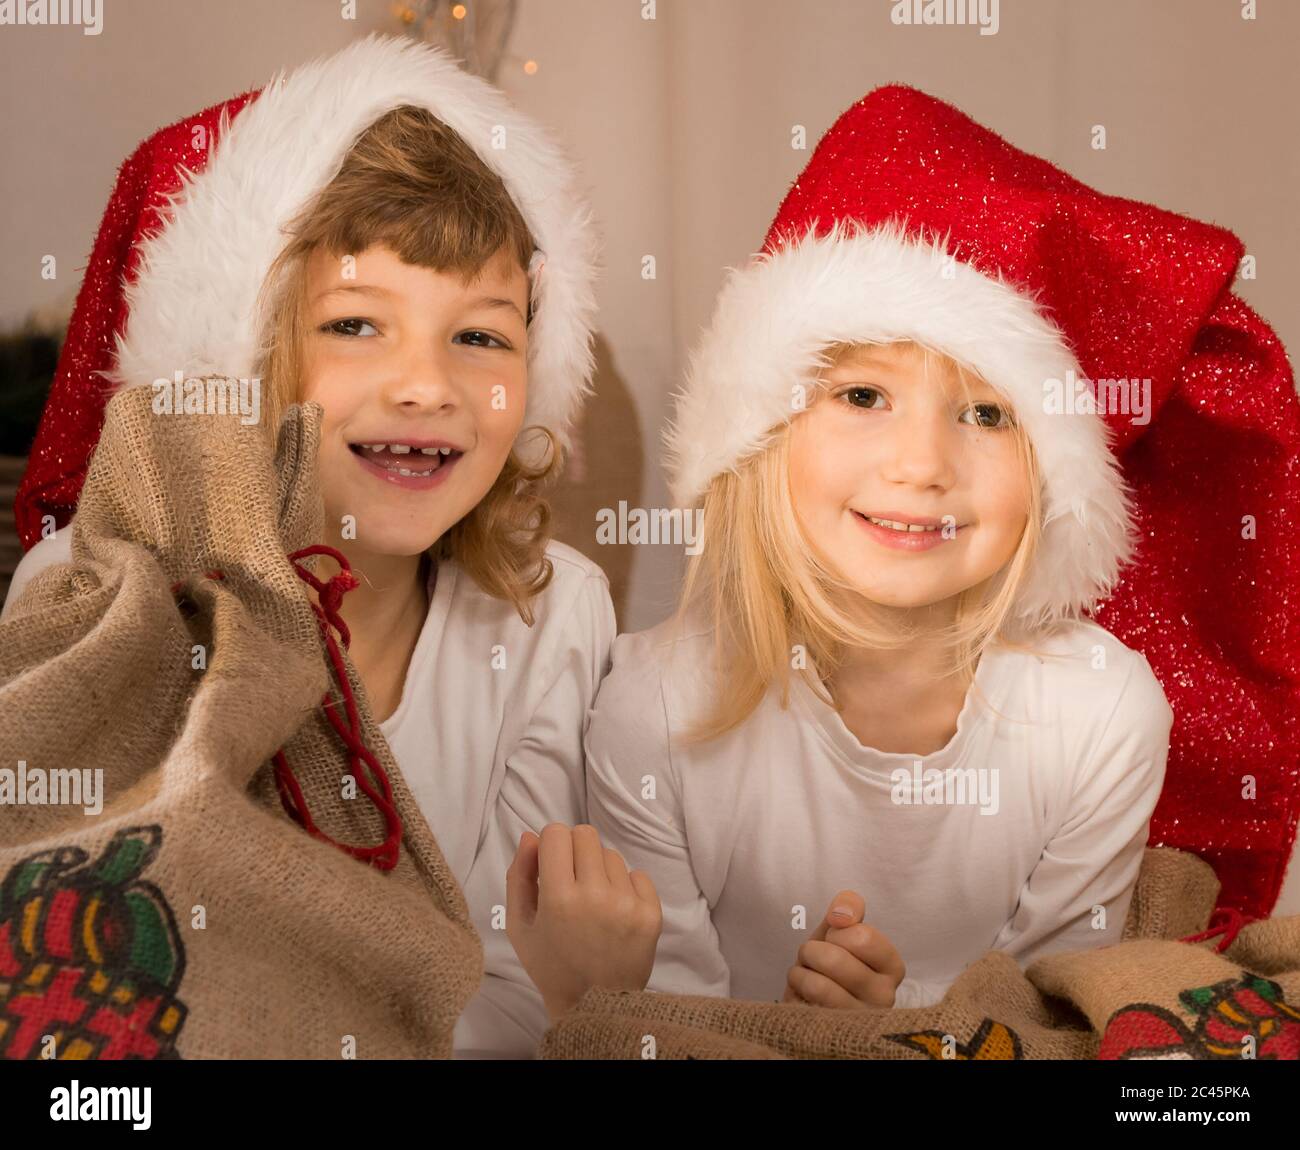 Happy Christmas elves Stock Photo